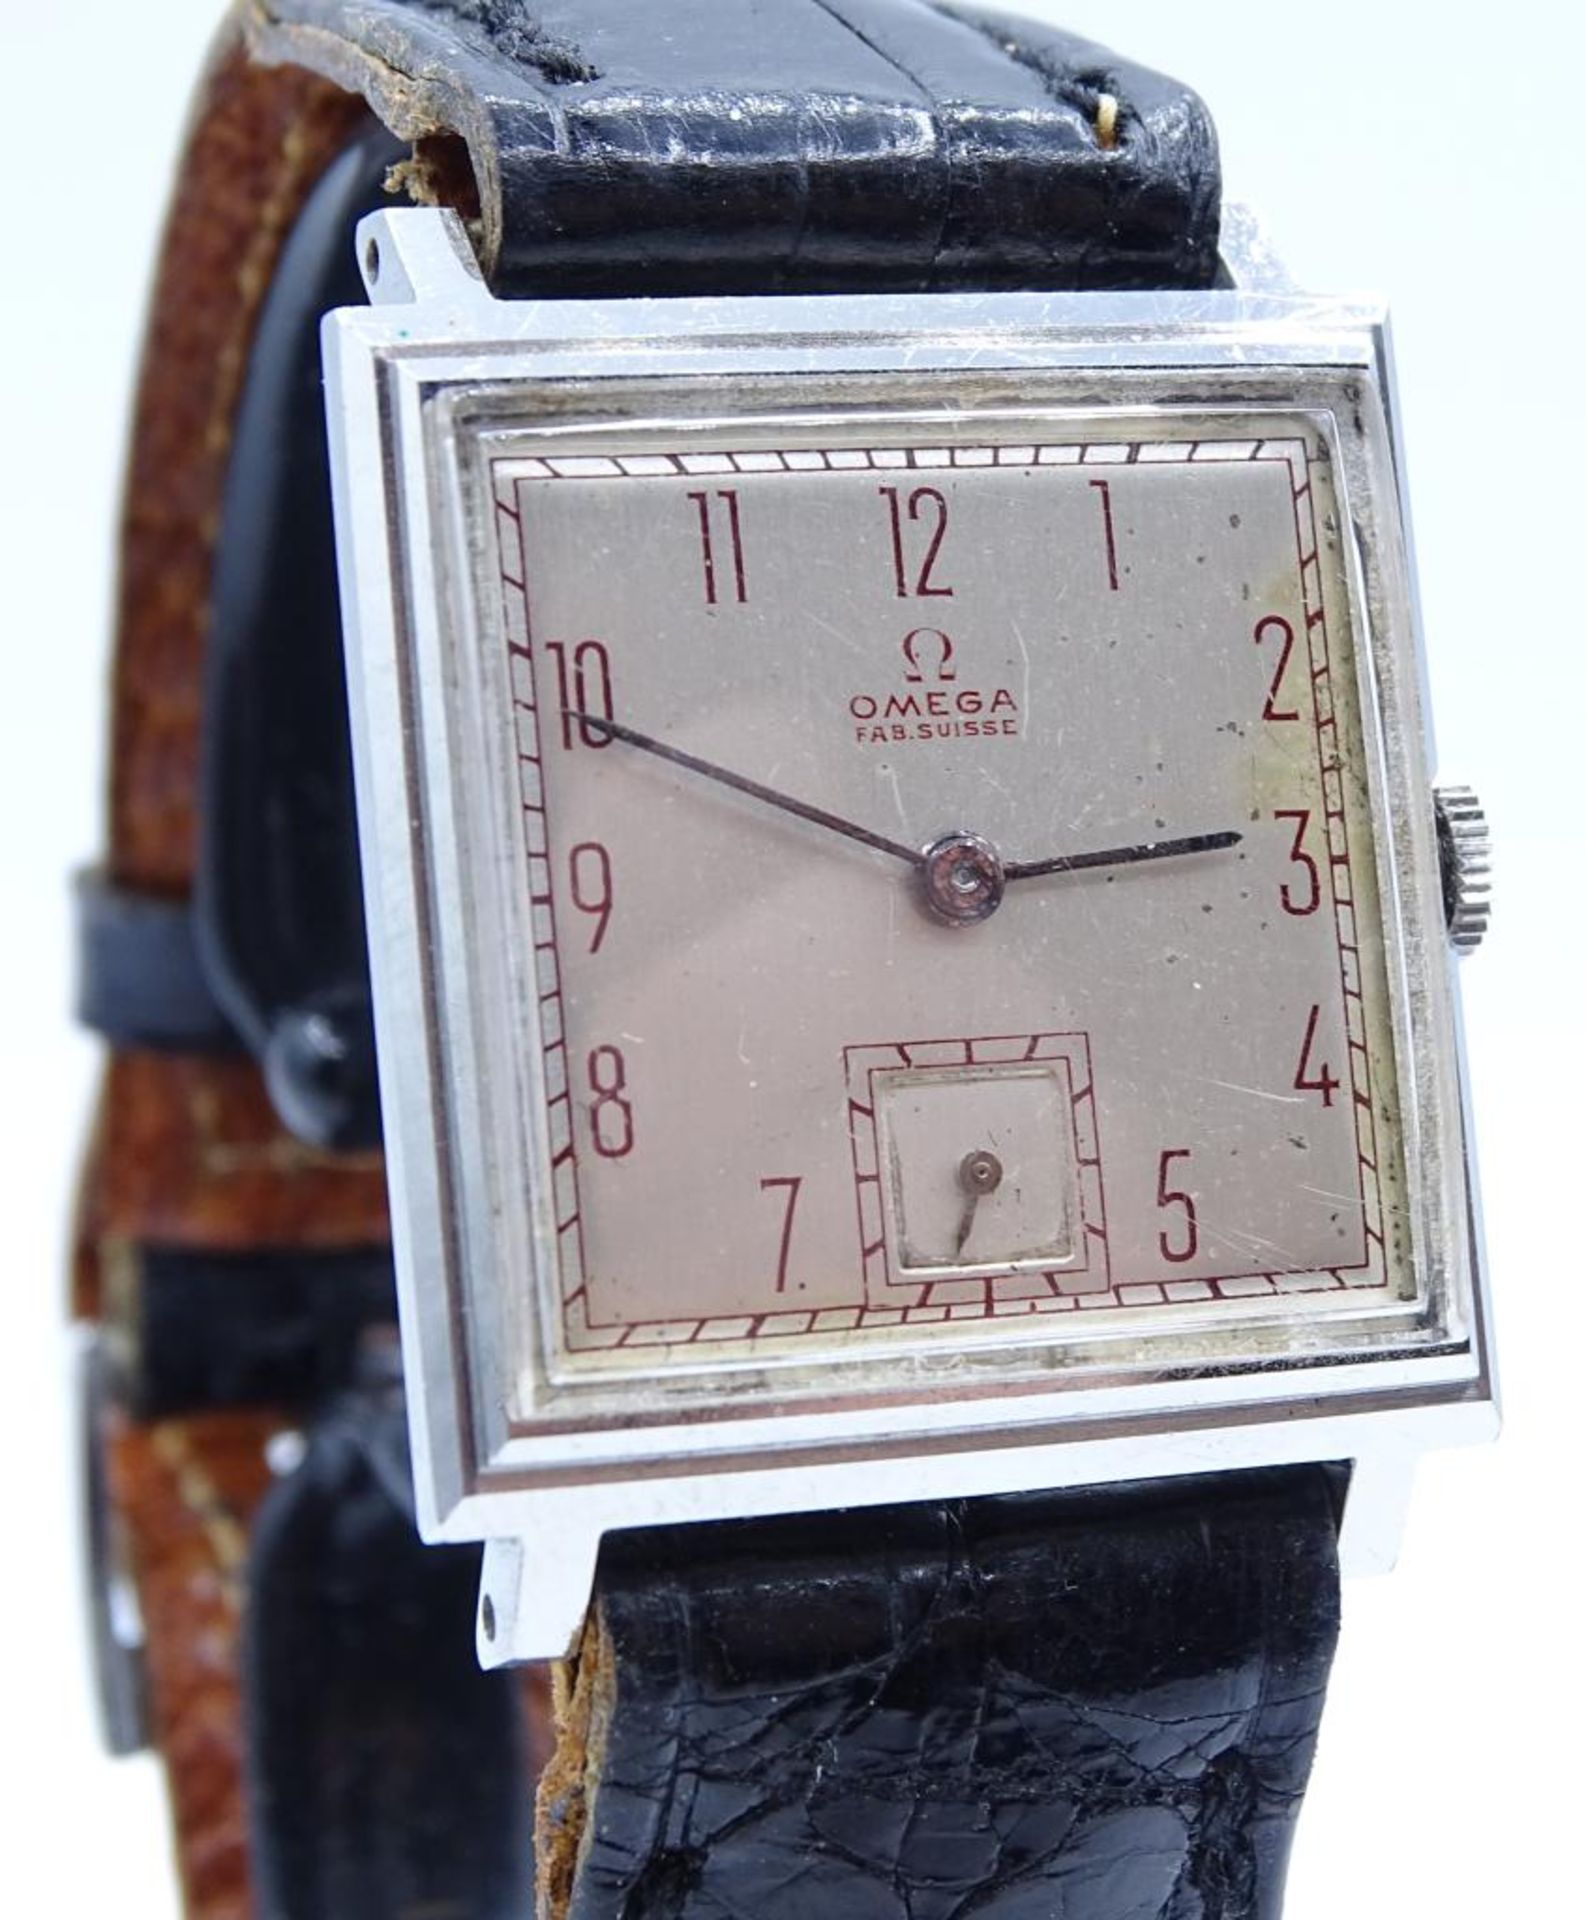 Vintage Armbanduhr "OMEGA",Fab.Suisse,mechanisch,Werk läuft,Edelstahl,Gehäuse 27x25mm,auf Werk Nr.